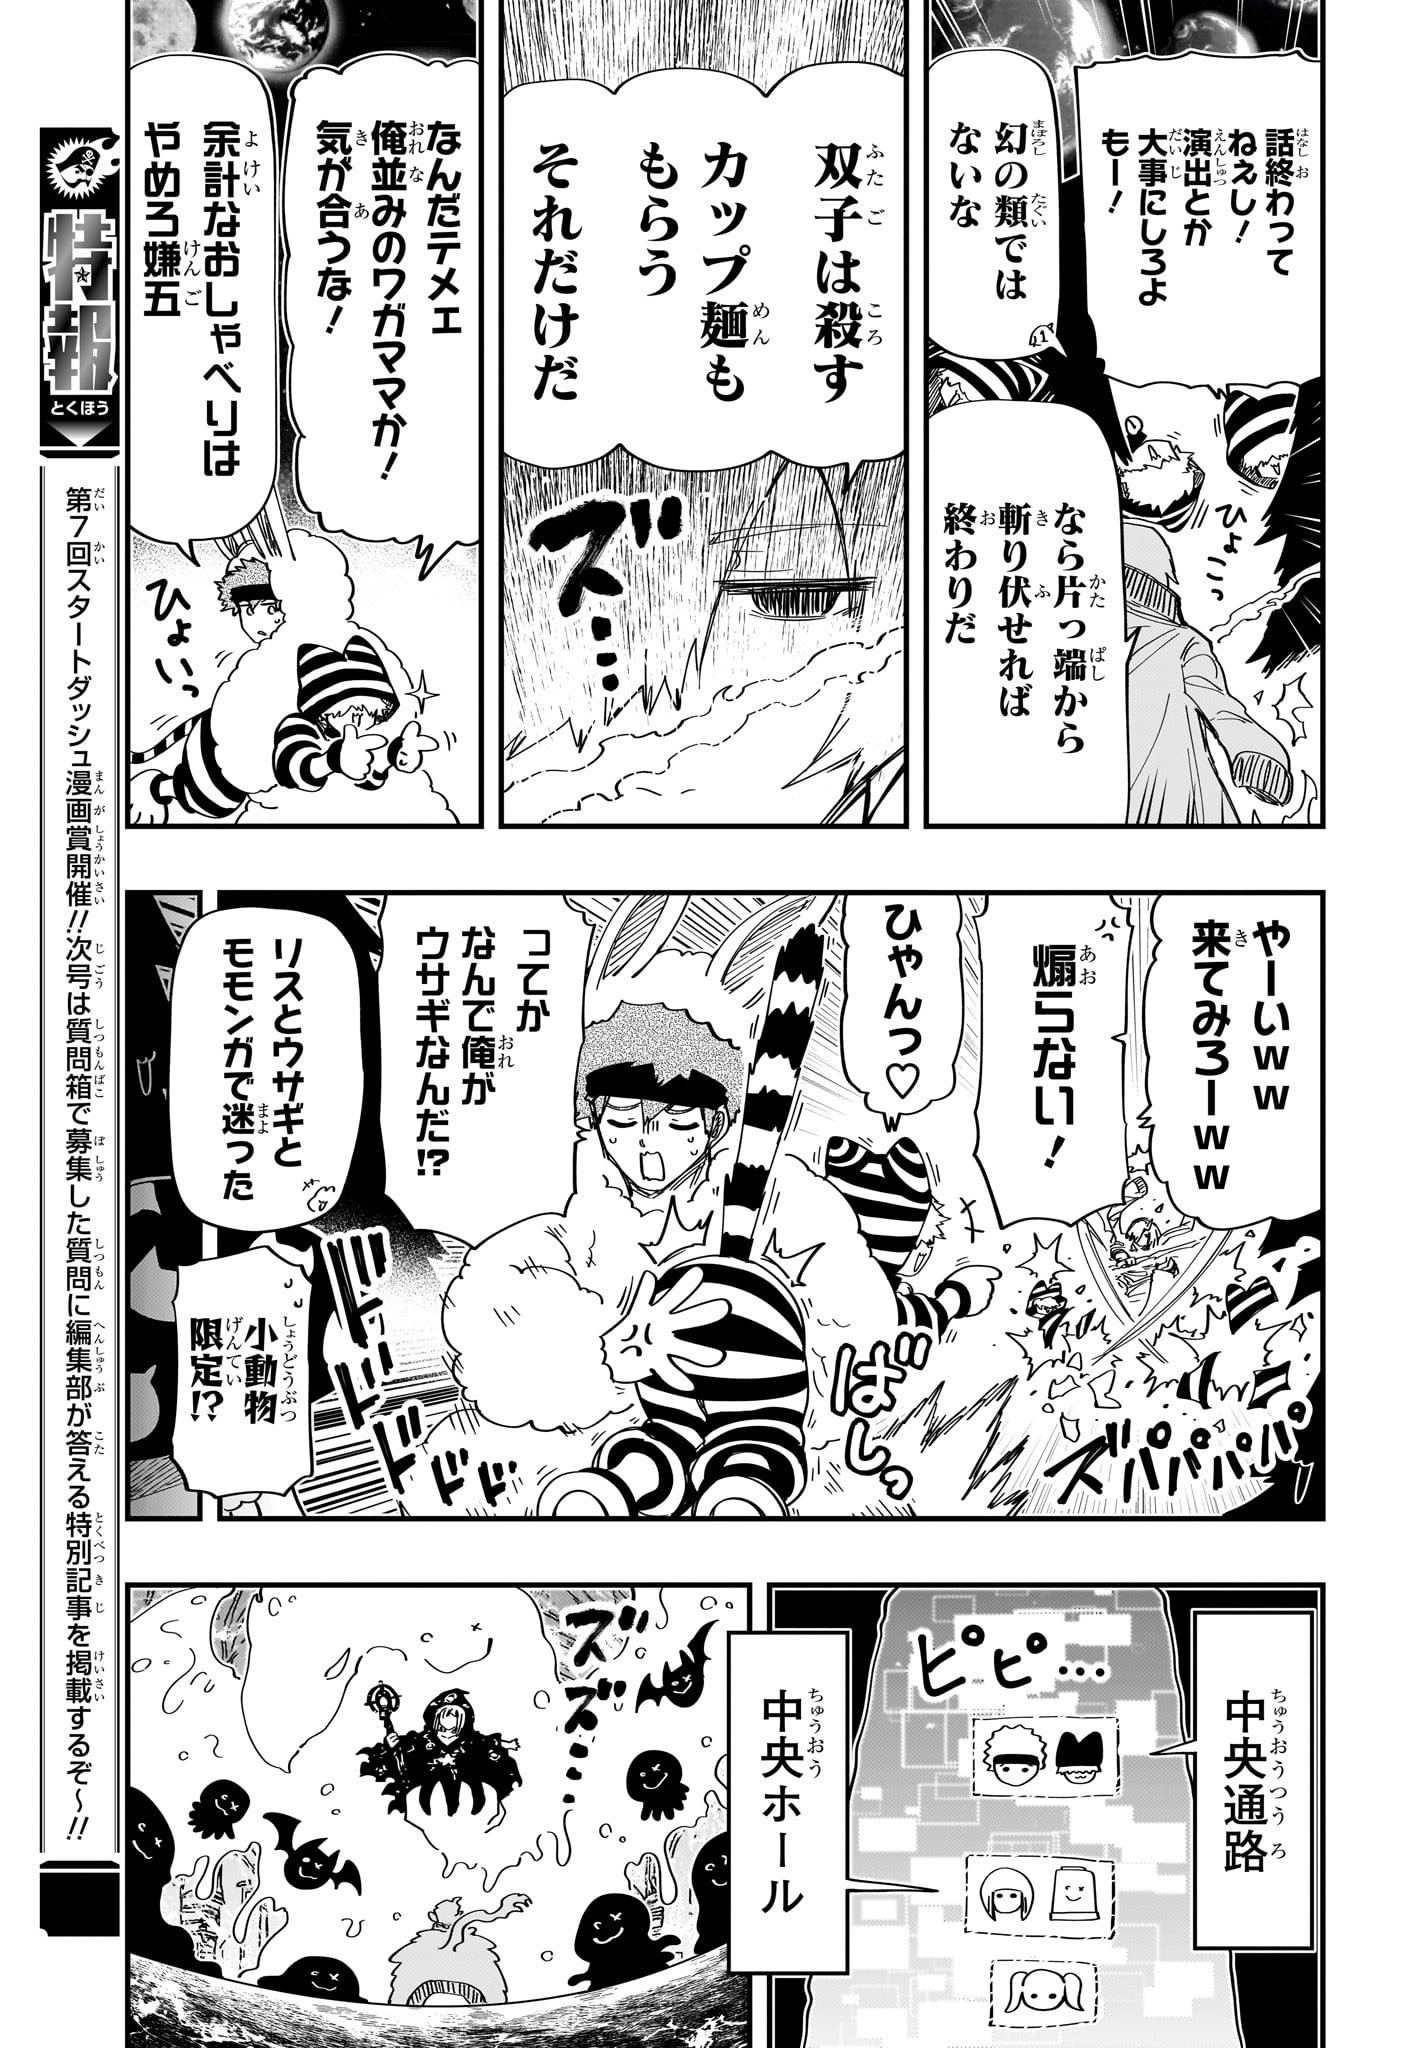 Yozakura-san Chi no Daisakusen - Chapter 226 - Page 9